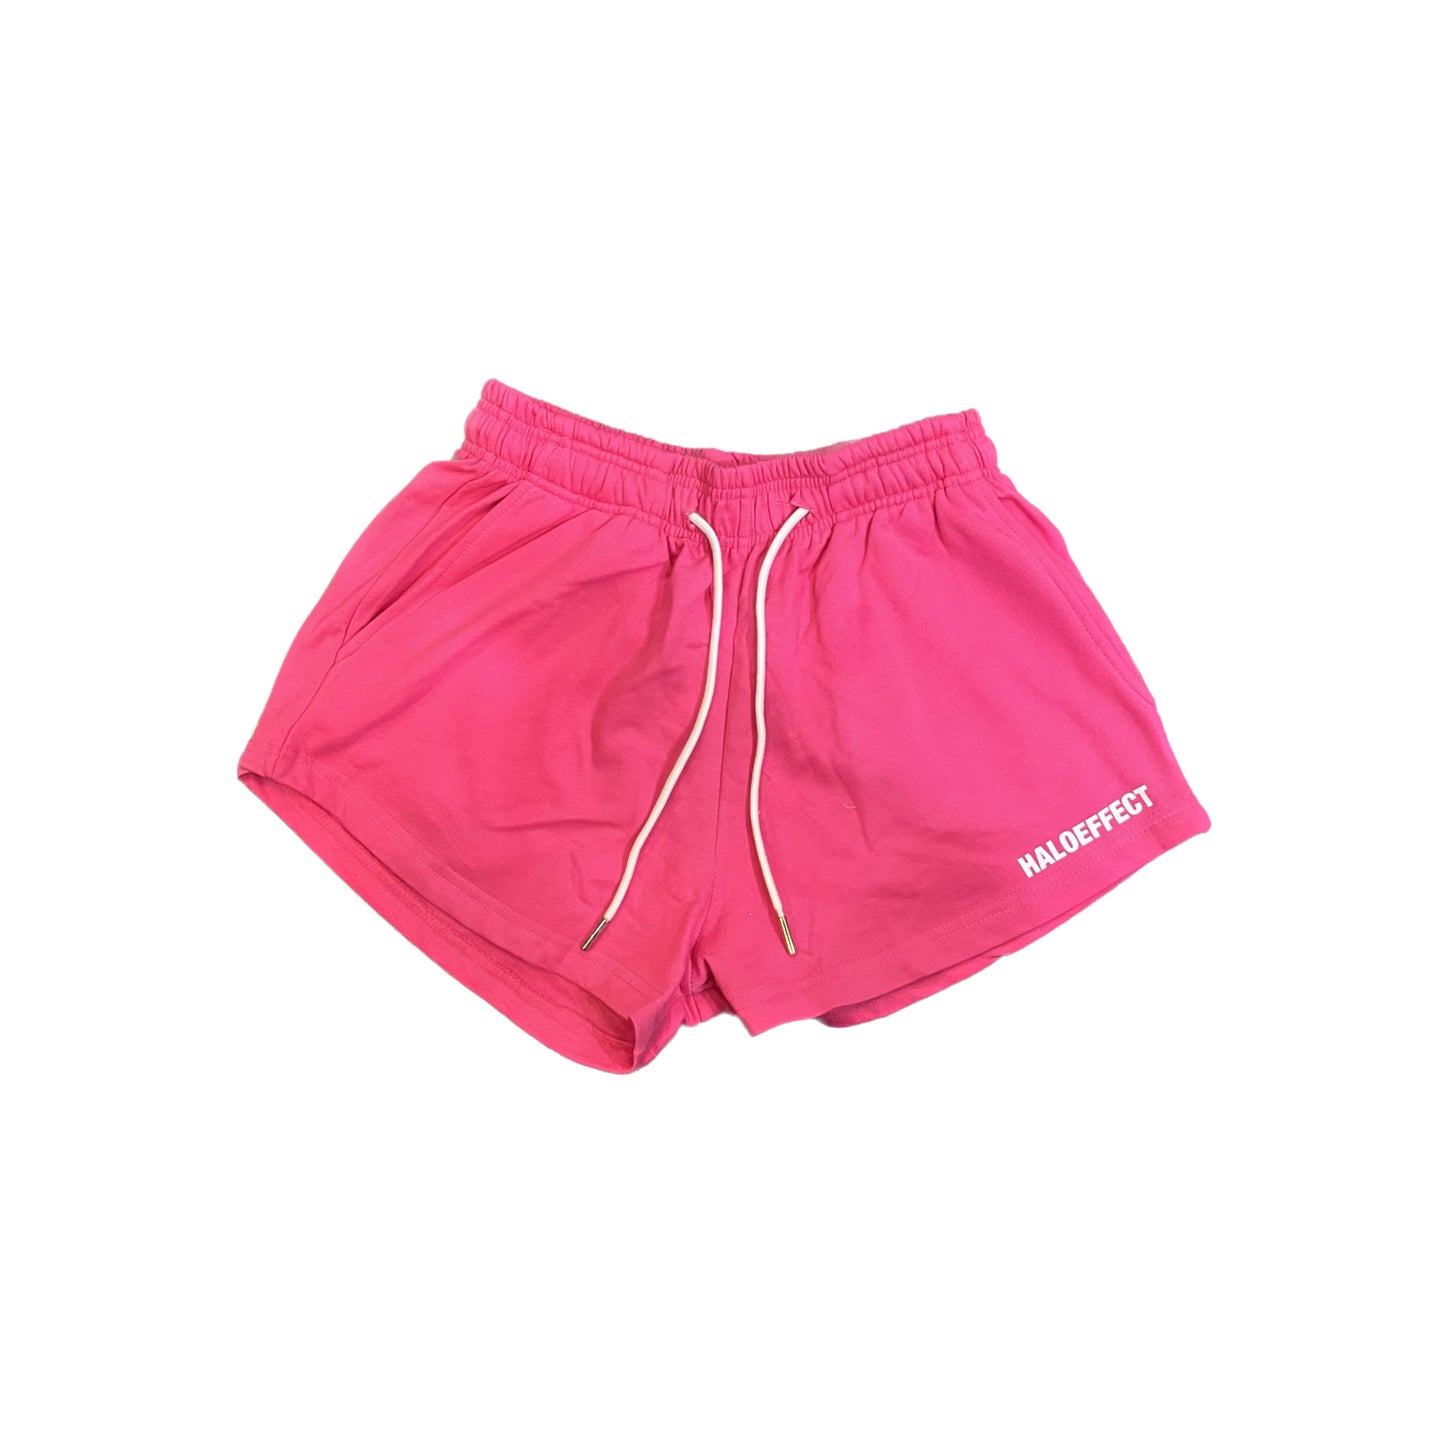 Halo Effect University Sweat Shorts - Pink (Women)